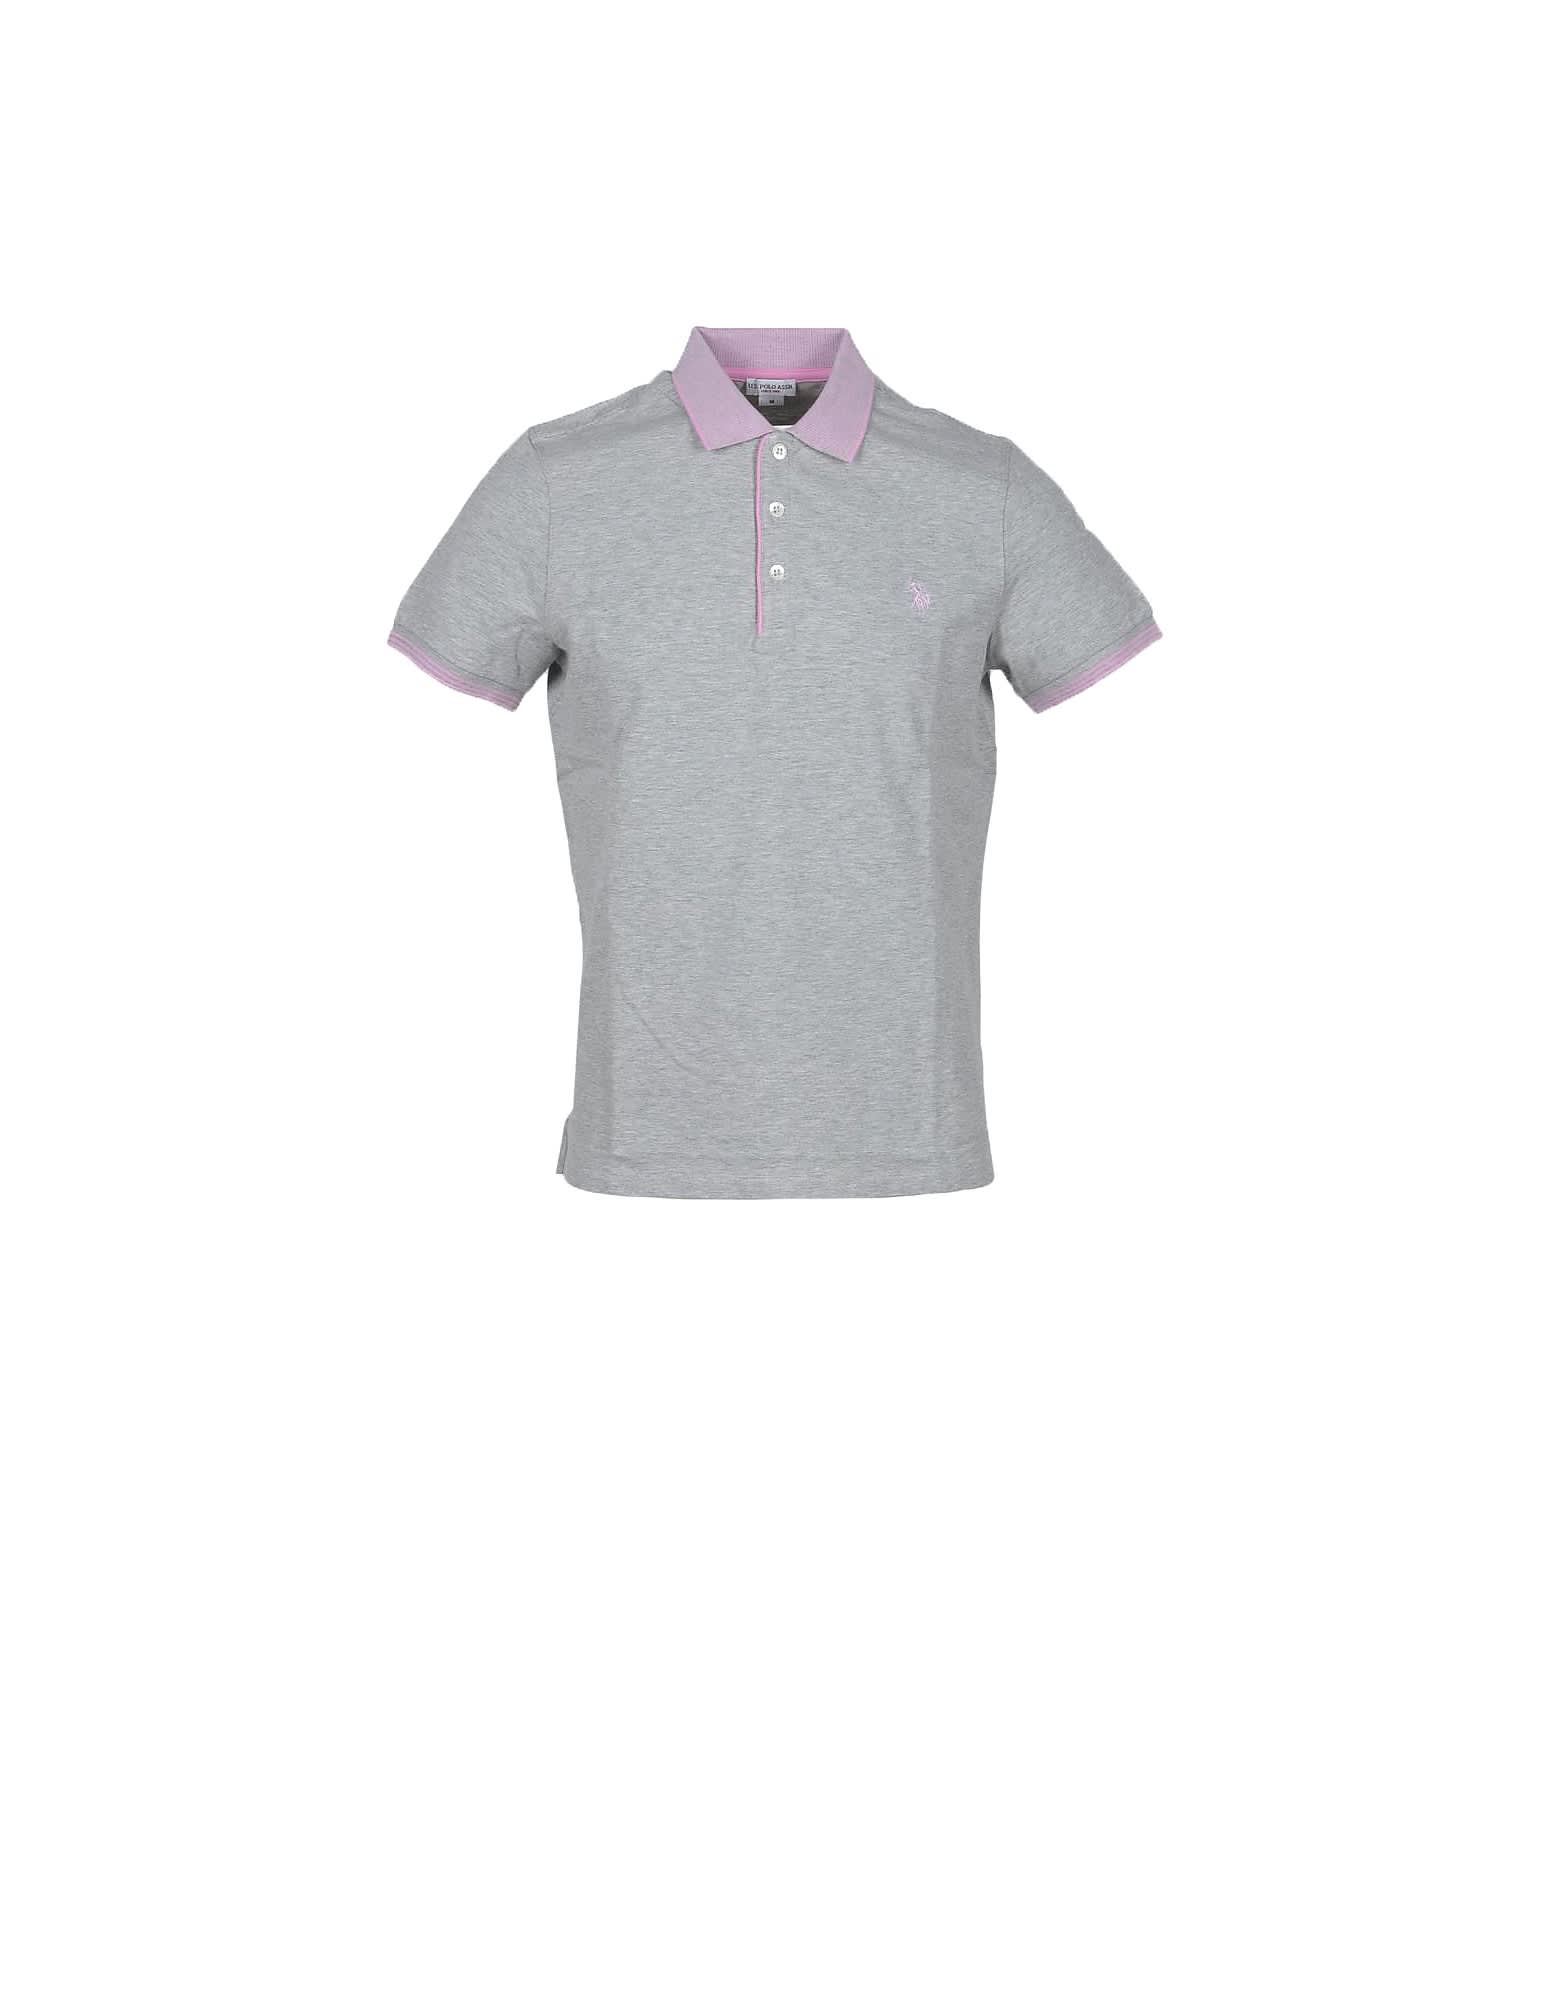 U.s. Polo Assn. Melange Gray Piqué Cotton Mens Polo Shirt